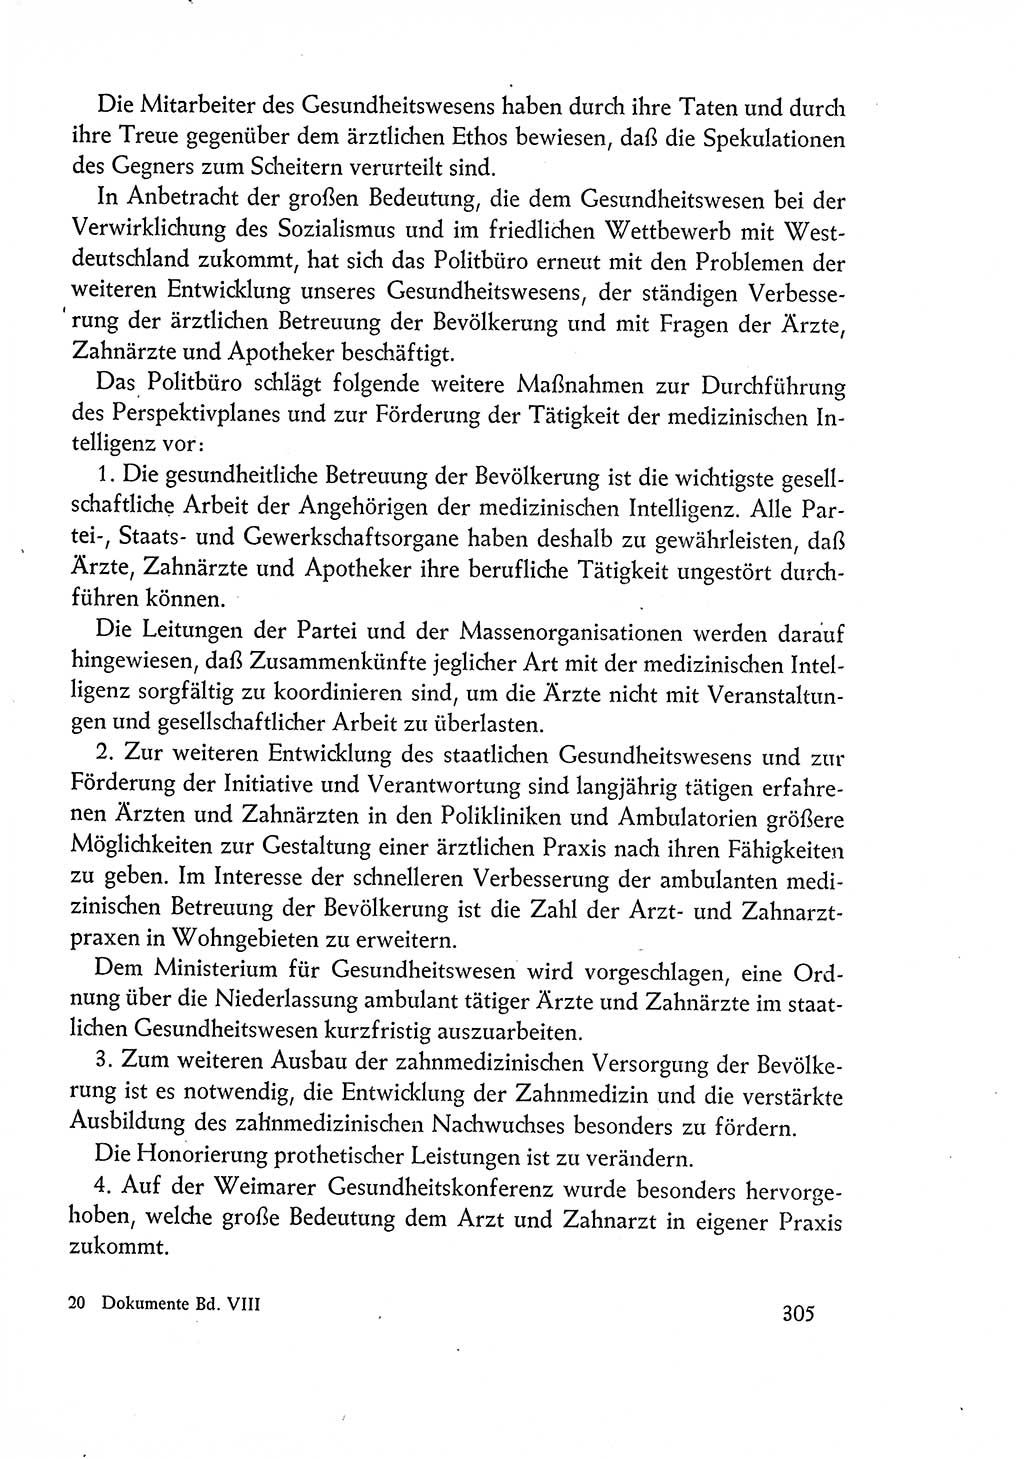 Dokumente der Sozialistischen Einheitspartei Deutschlands (SED) [Deutsche Demokratische Republik (DDR)] 1960-1961, Seite 305 (Dok. SED DDR 1960-1961, S. 305)